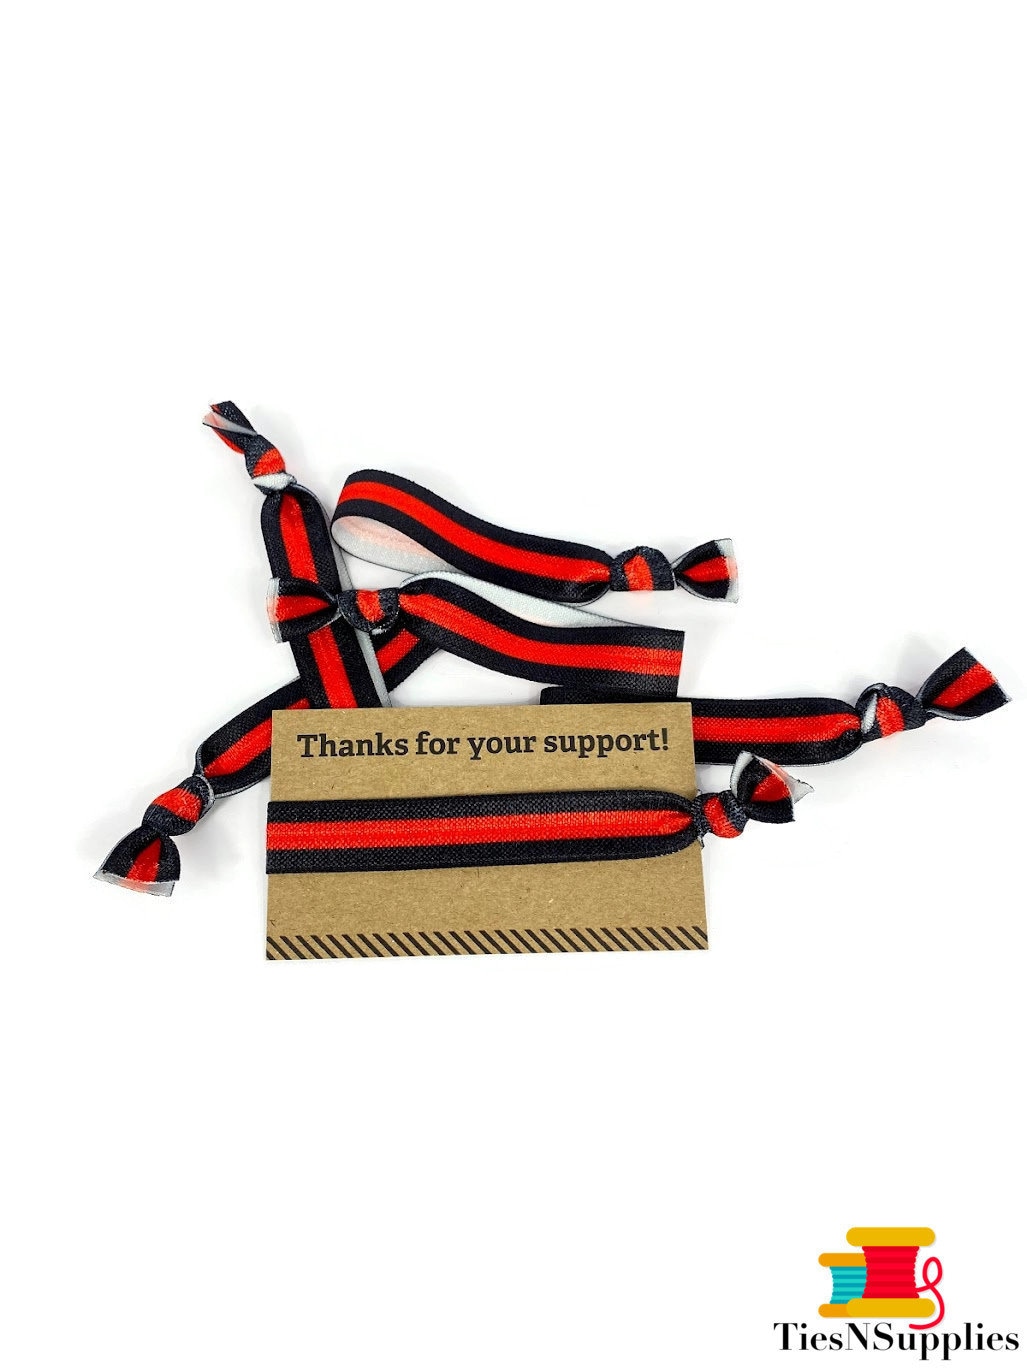 Red Line- Responder- Dankeskarte Mit Krawatten- Haarbändern/Armbänder - Ideal Als Dankeschön, Geschenk Oder Fundraising. Einfach Geld Sammeln von TiesNSupplies